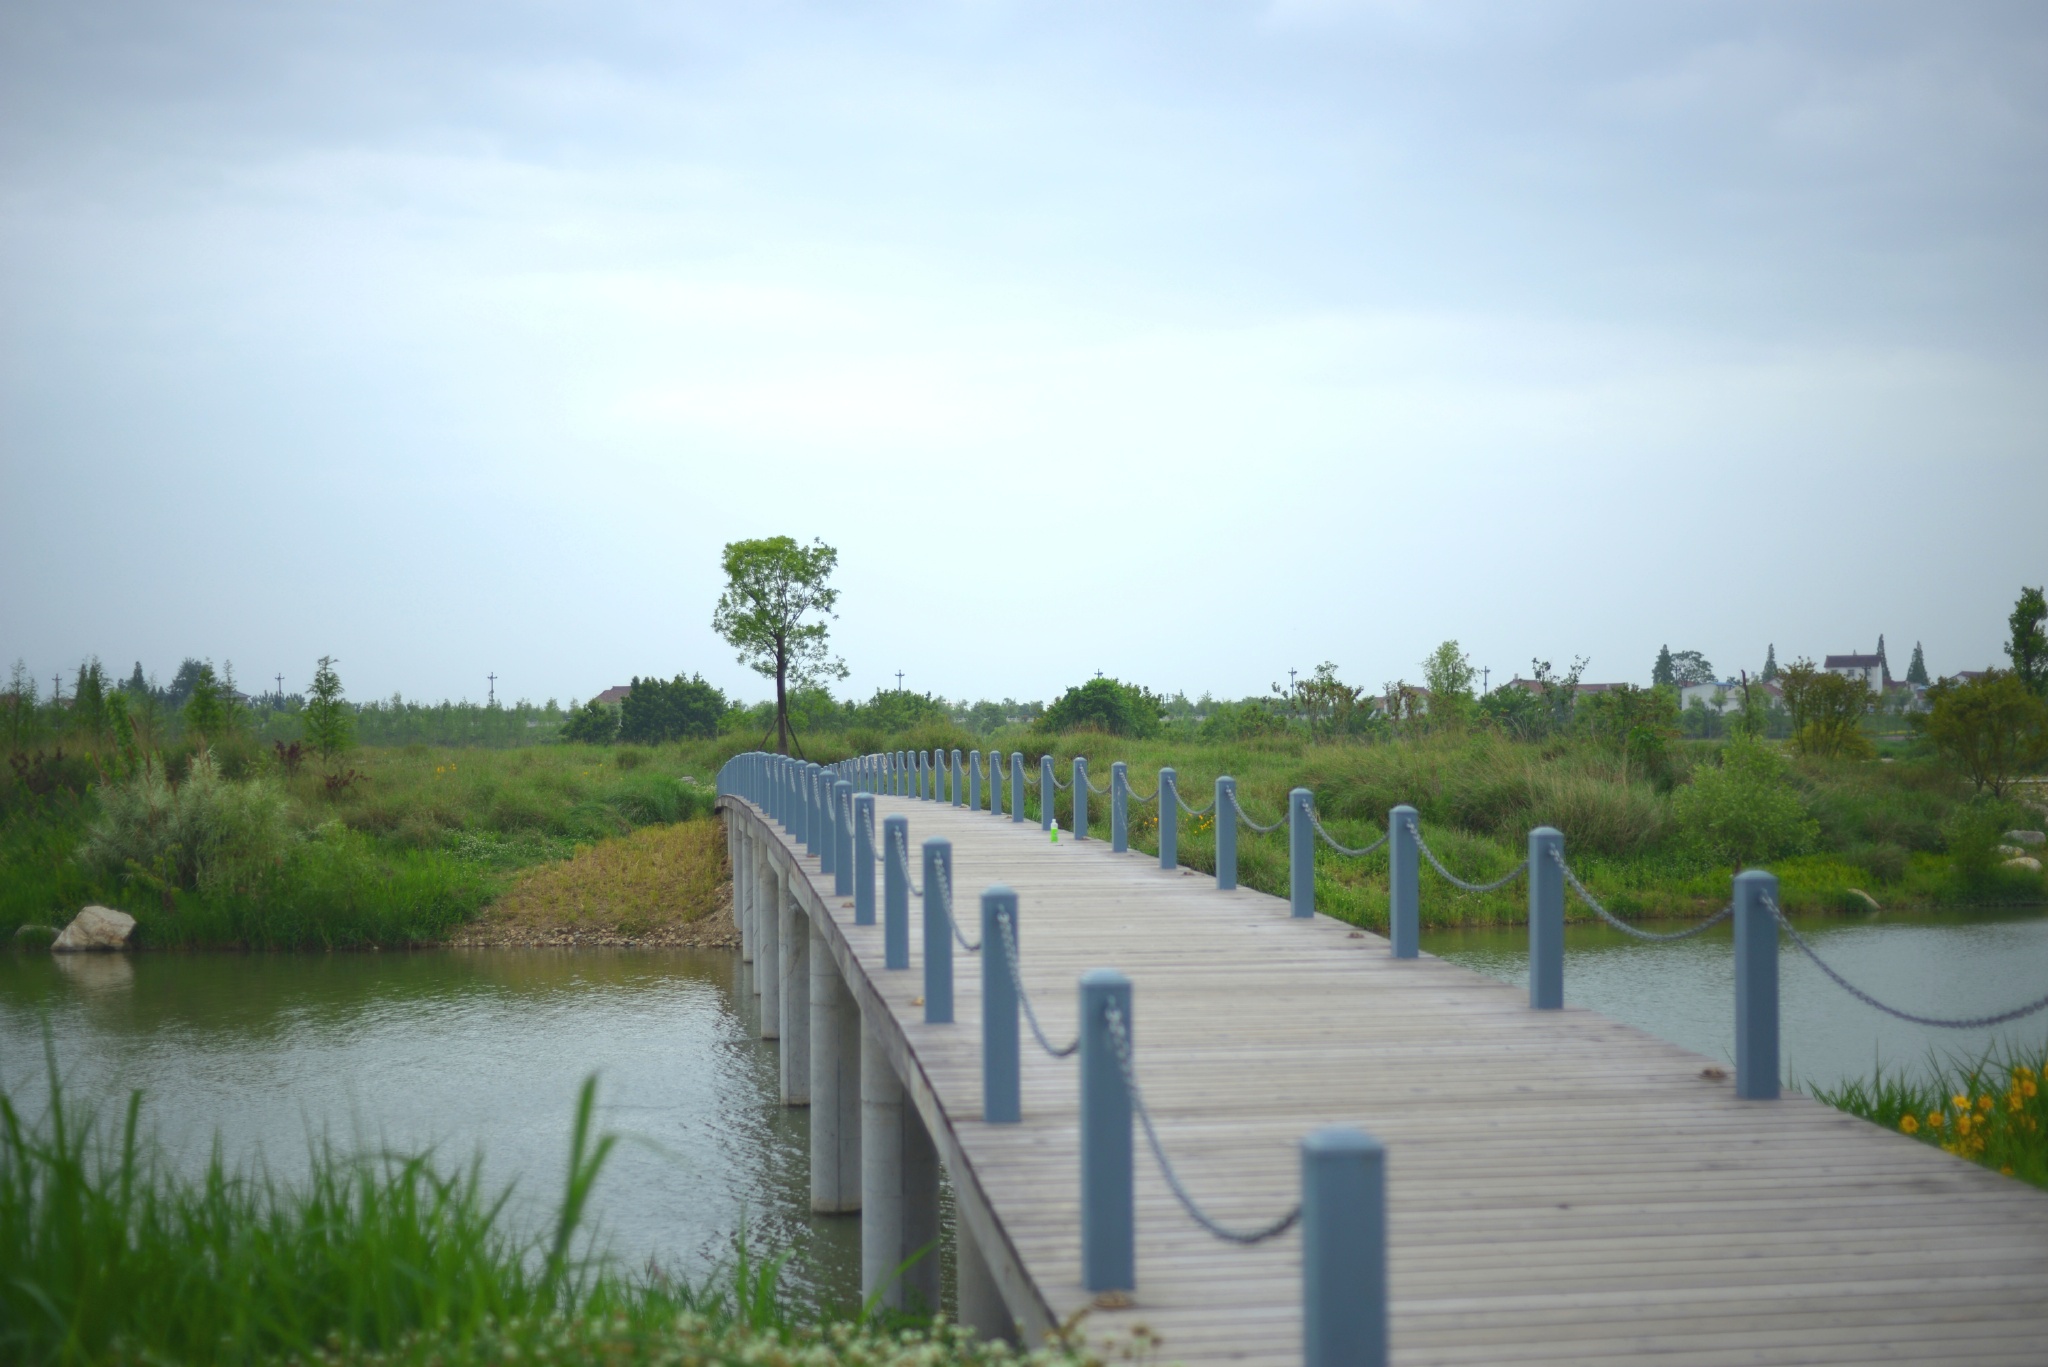 汉江濂水河畔湿地公园图片